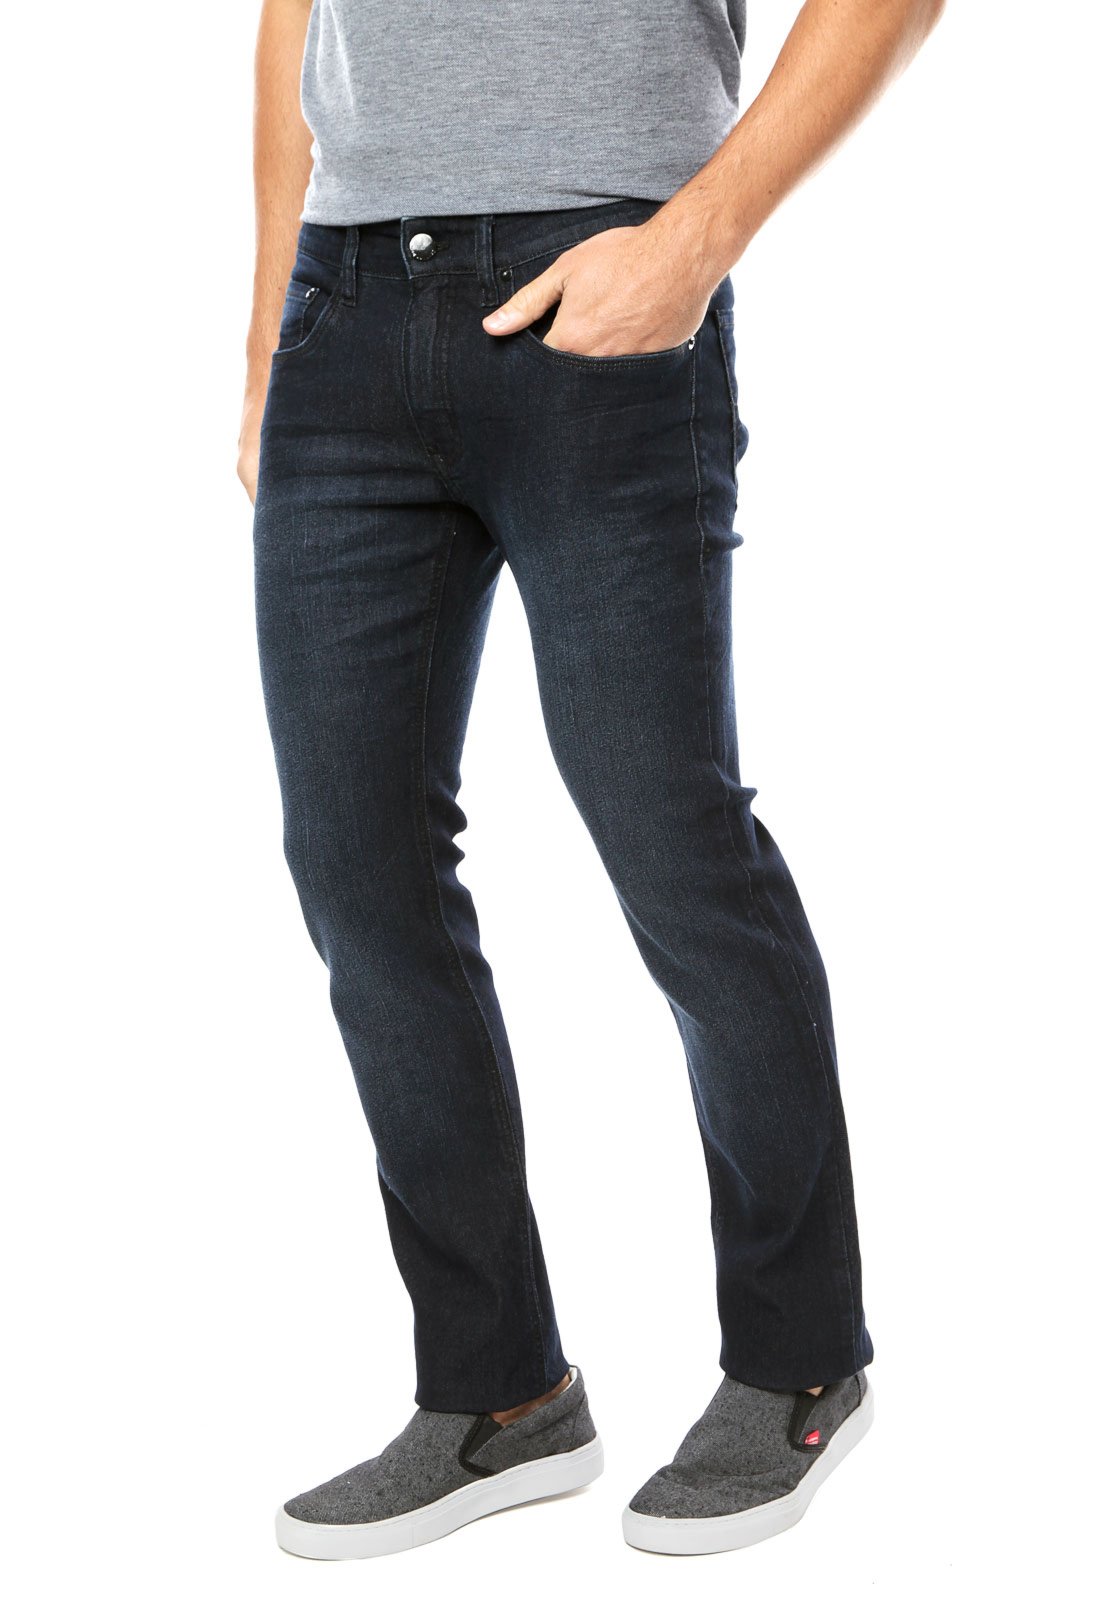 jeans calvin klein masculino